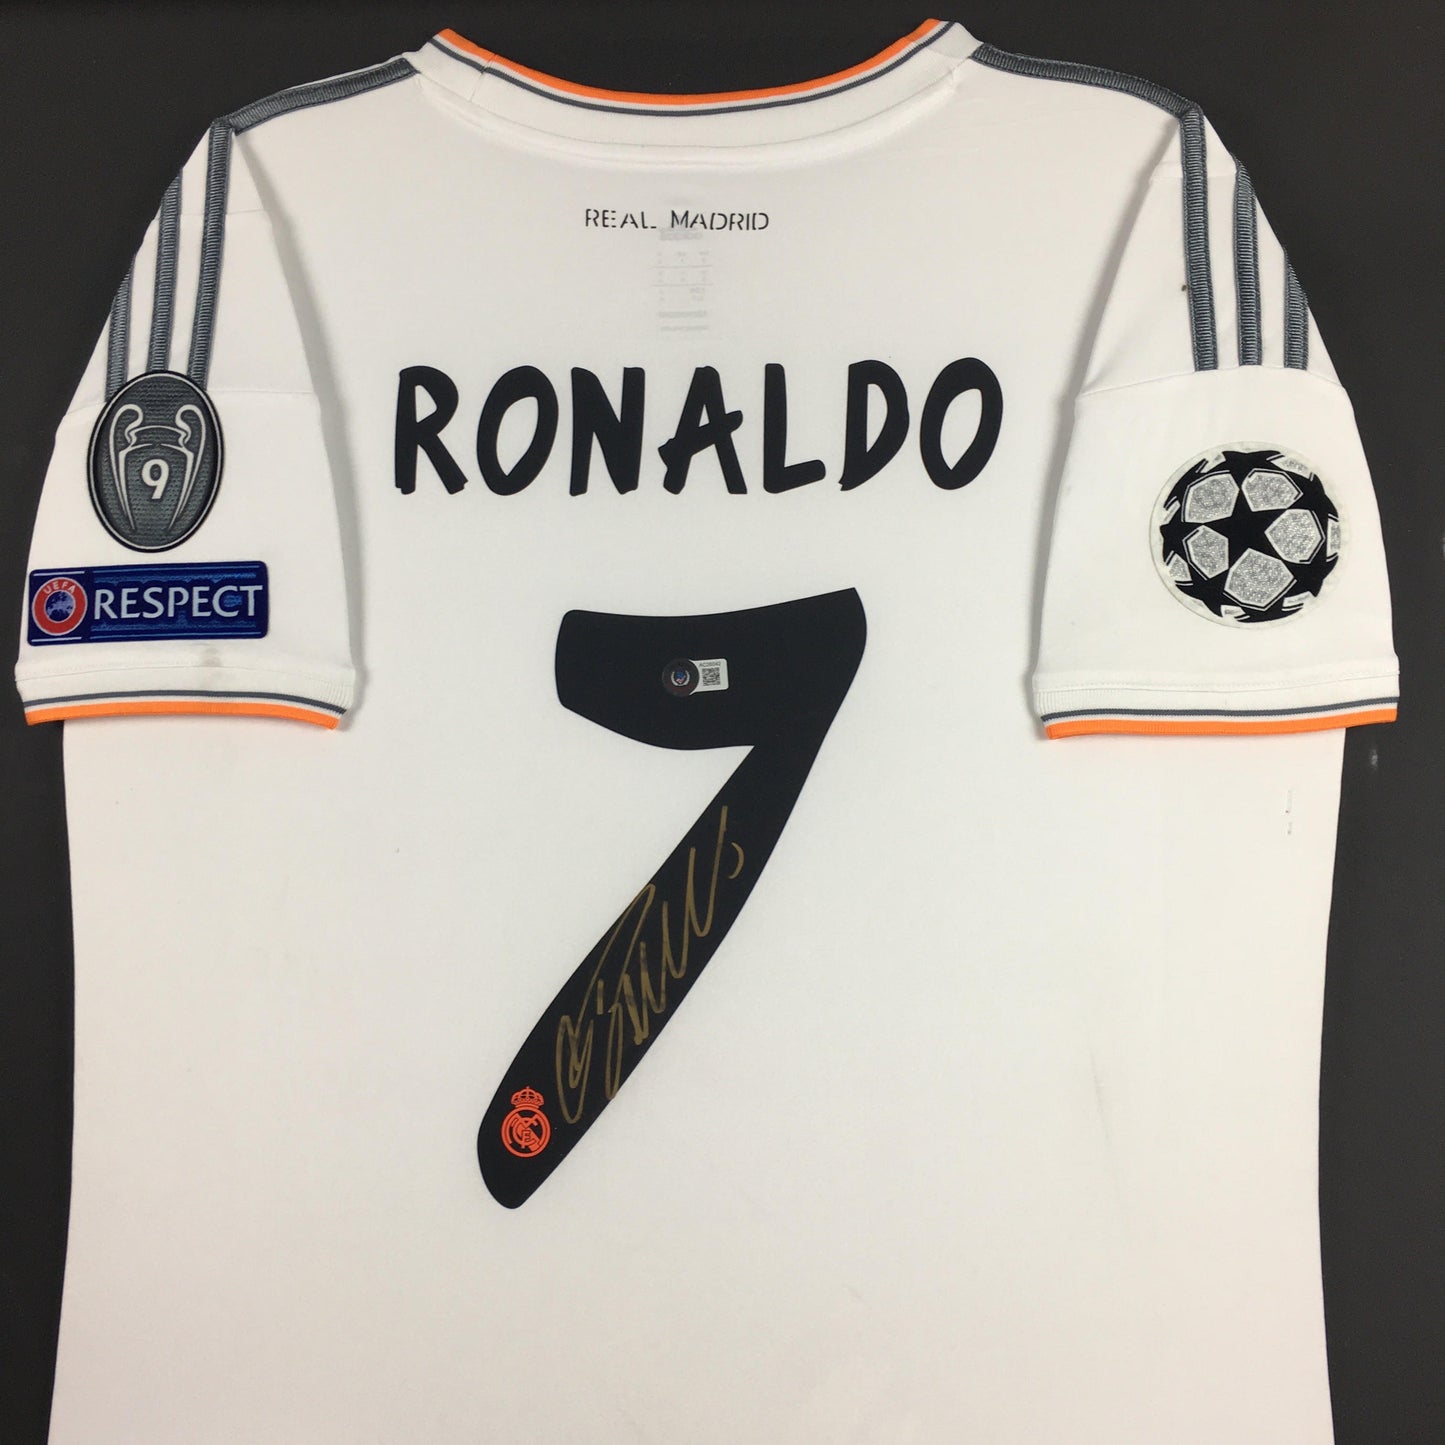 Cristiano Ronaldo Signed Jersey Framed